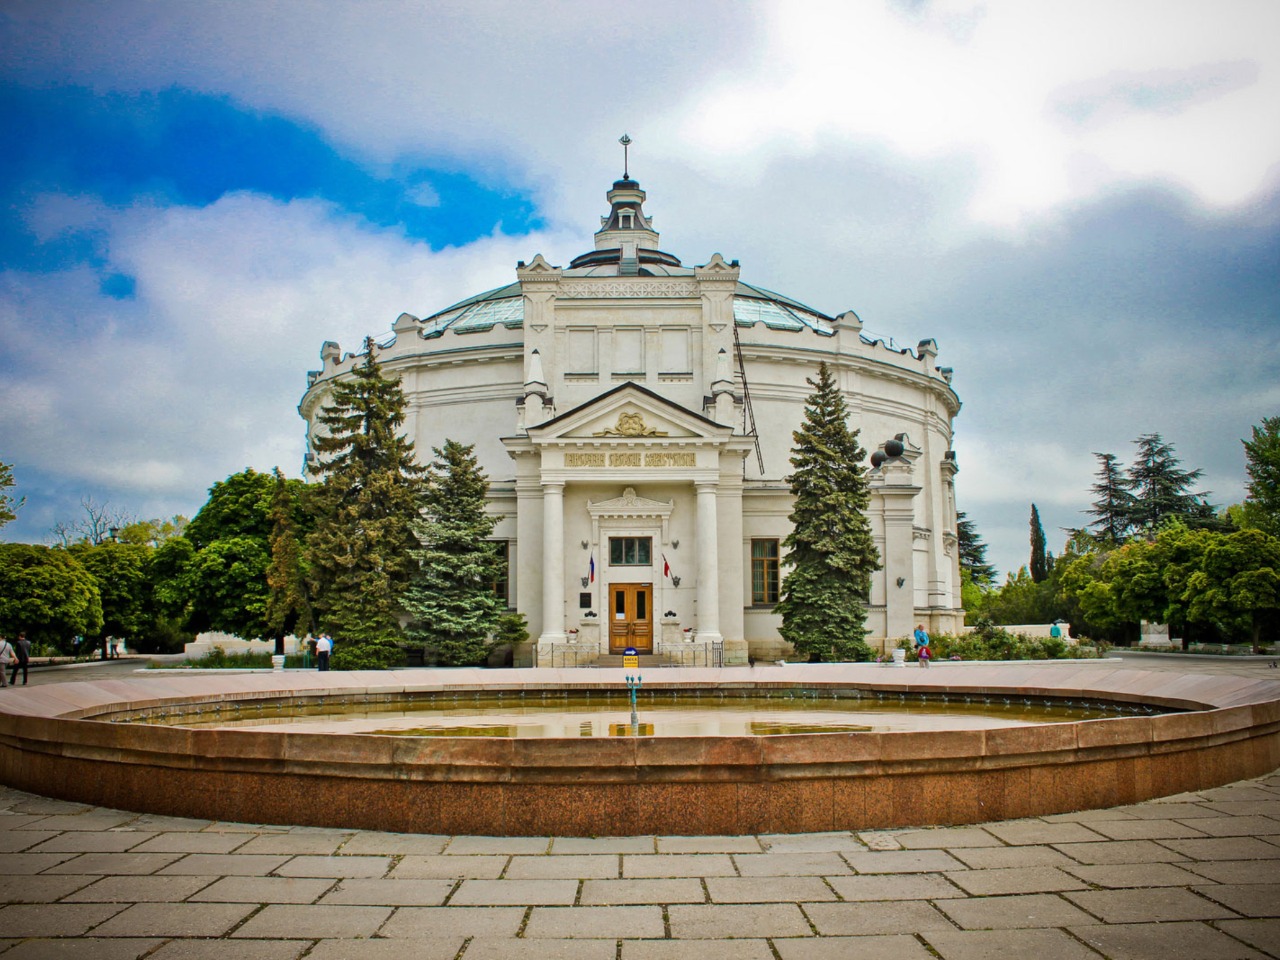 Сити-тур "Севастопольский экспресс" | Цена 5350₽, отзывы, описание экскурсии